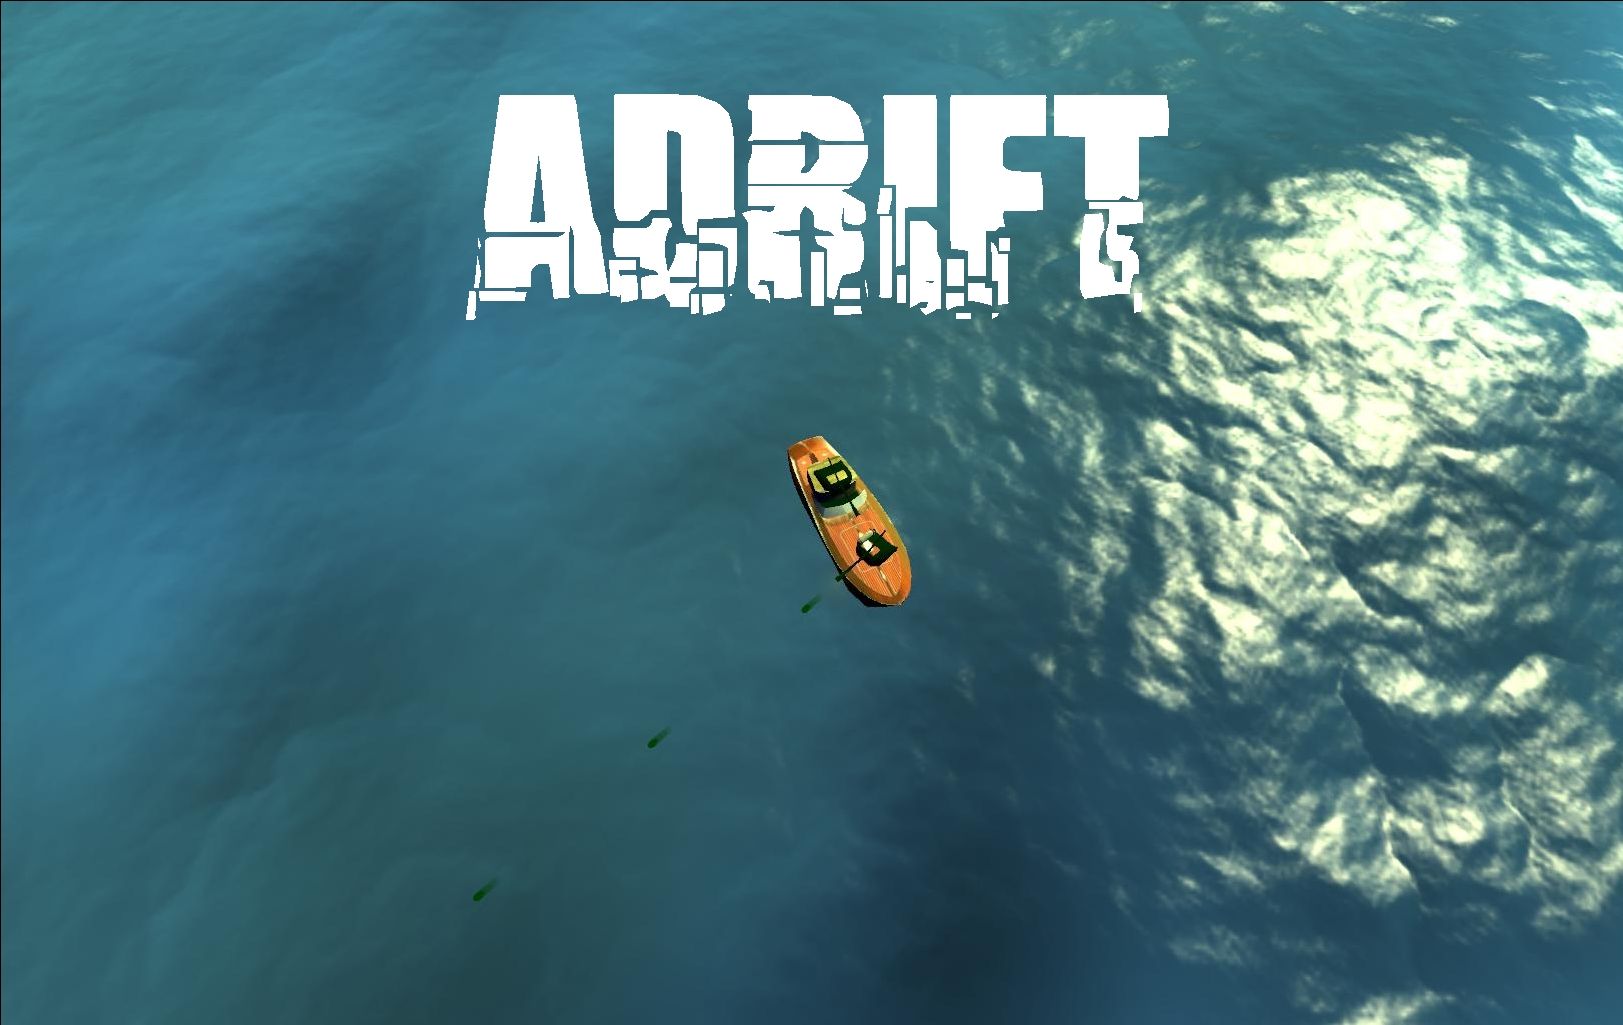 Adrift 2018 Movie Background